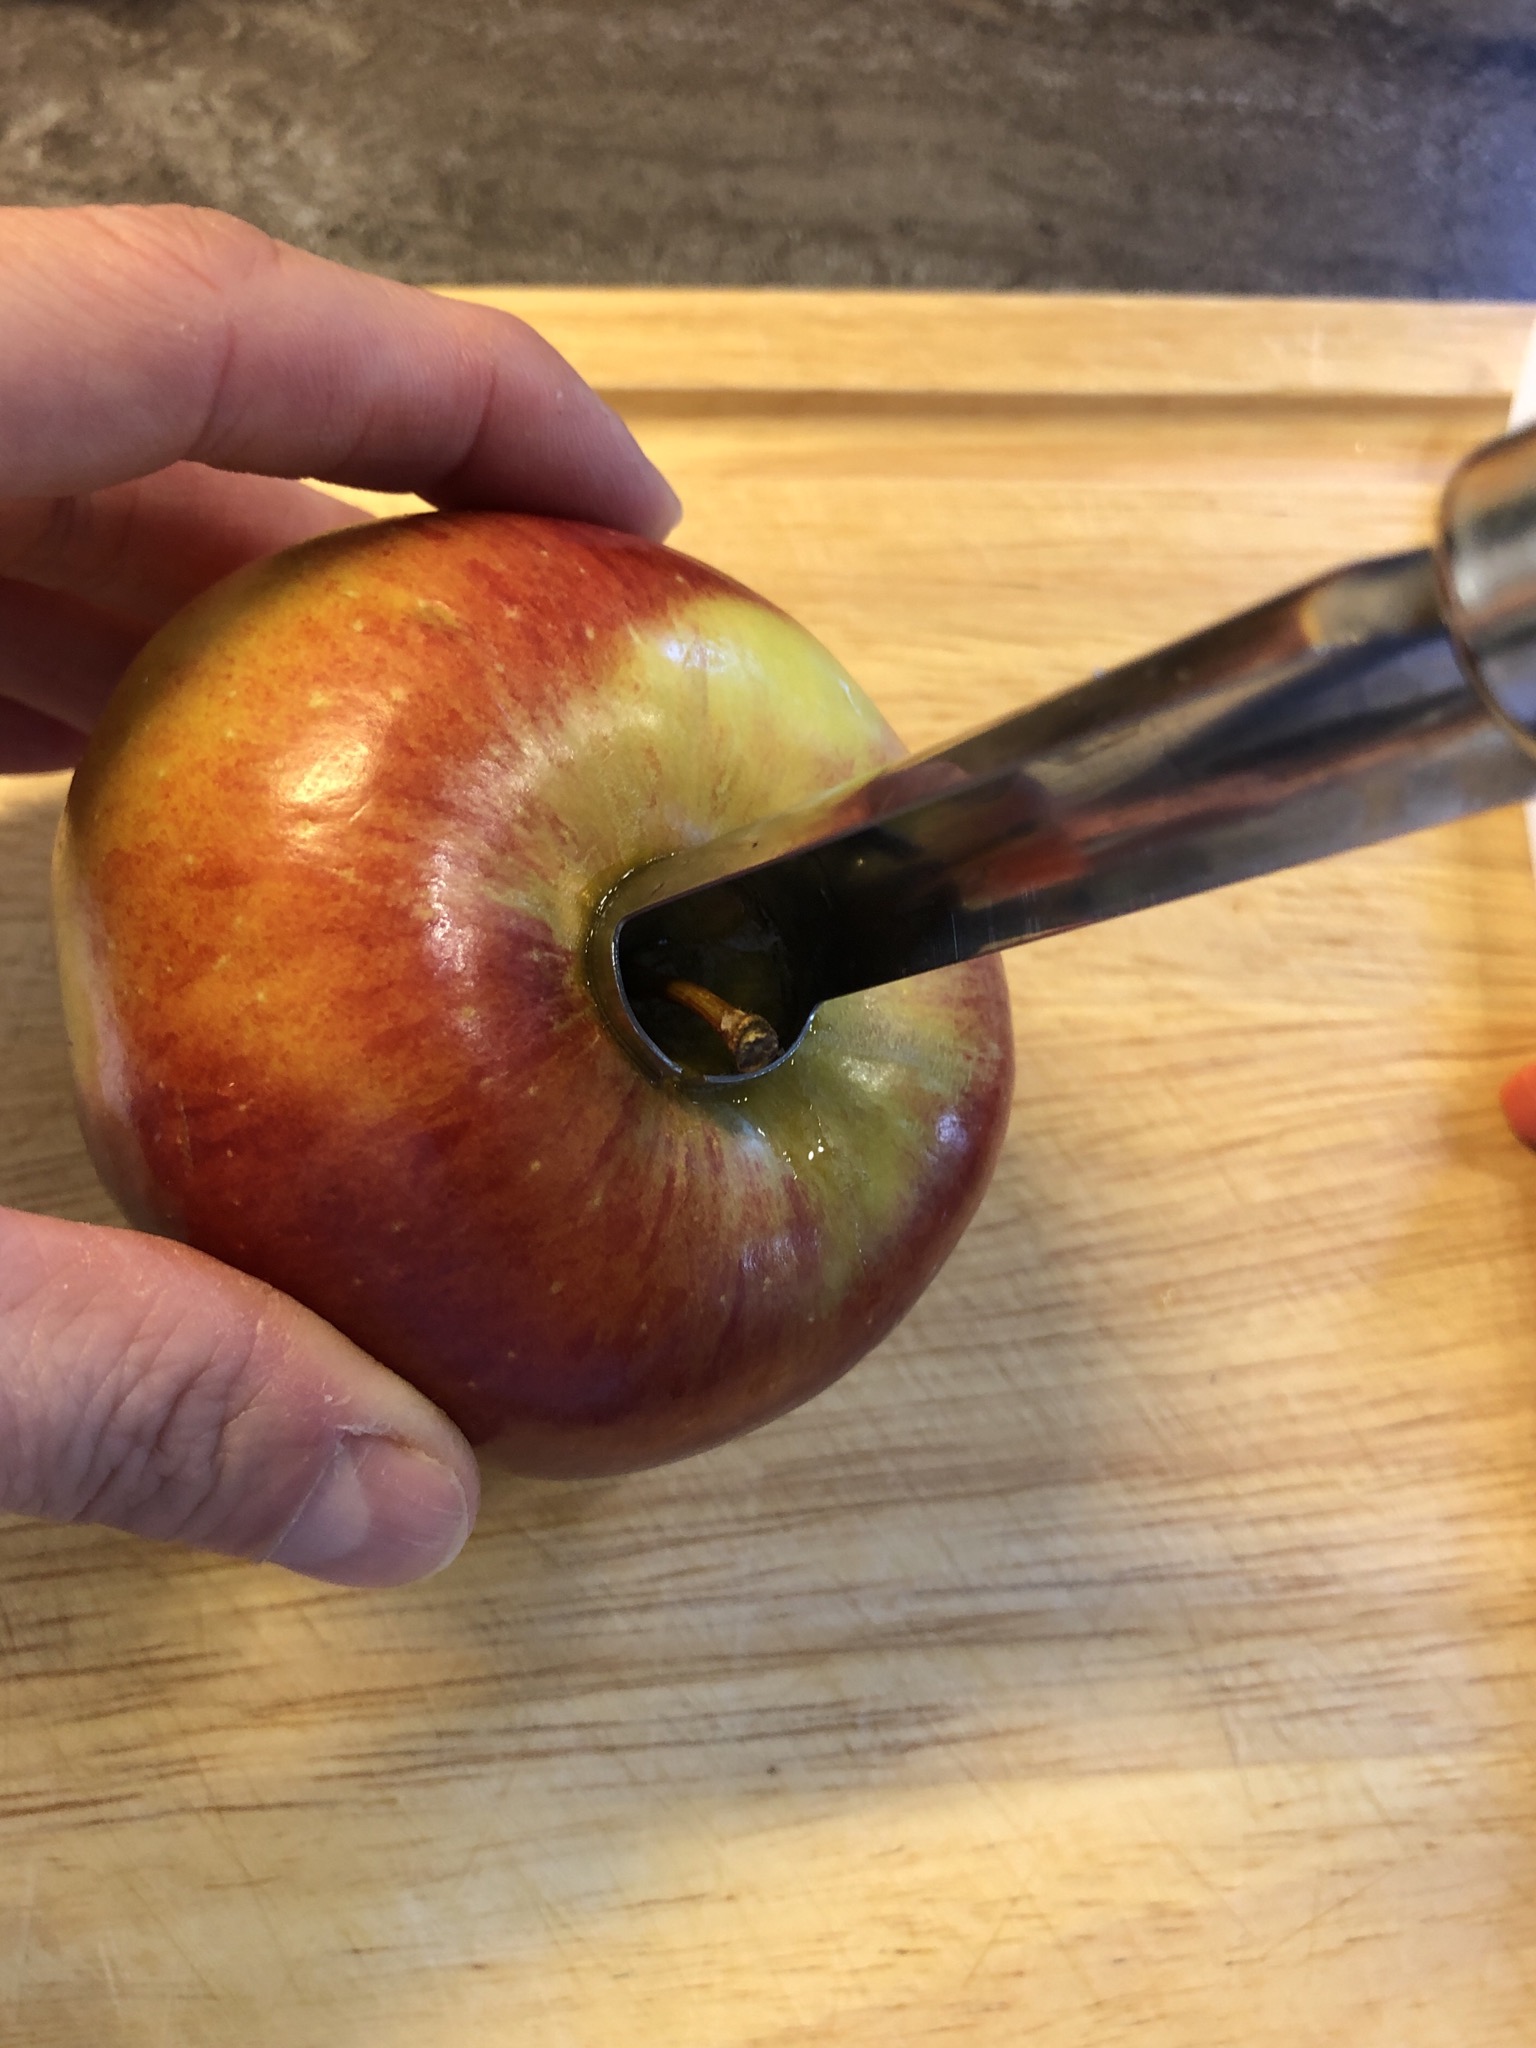 Bild zum Schritt 1 für das Bastel- und DIY-Abenteuer für Kinder: 'Apfel waschen.  Mit dem Apfel-Entkerner wird zunächst das Kernhaus...'